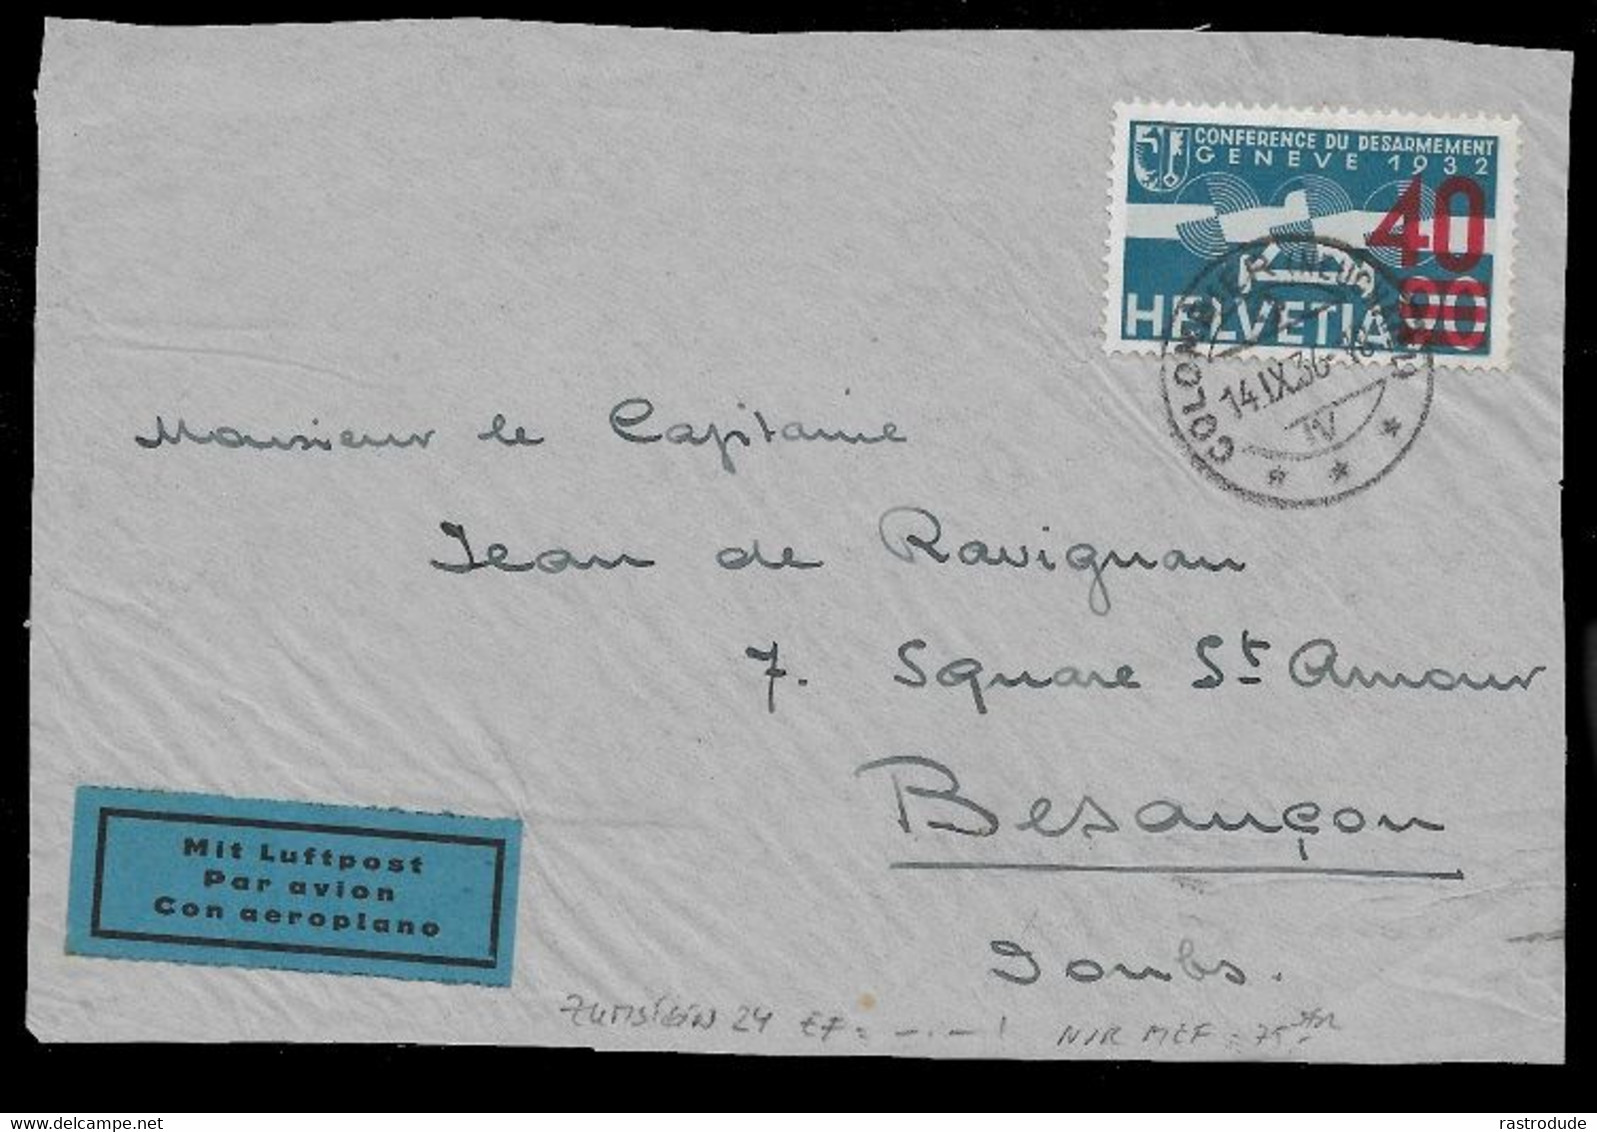 1936 SCHWEIZ SUISSE - FLUGMARKE 40 A.90 - ZUMSTEIN 24 EF -•- ! (nur Als MeF Bewertet)  Brief Vorderseite - Used Stamps